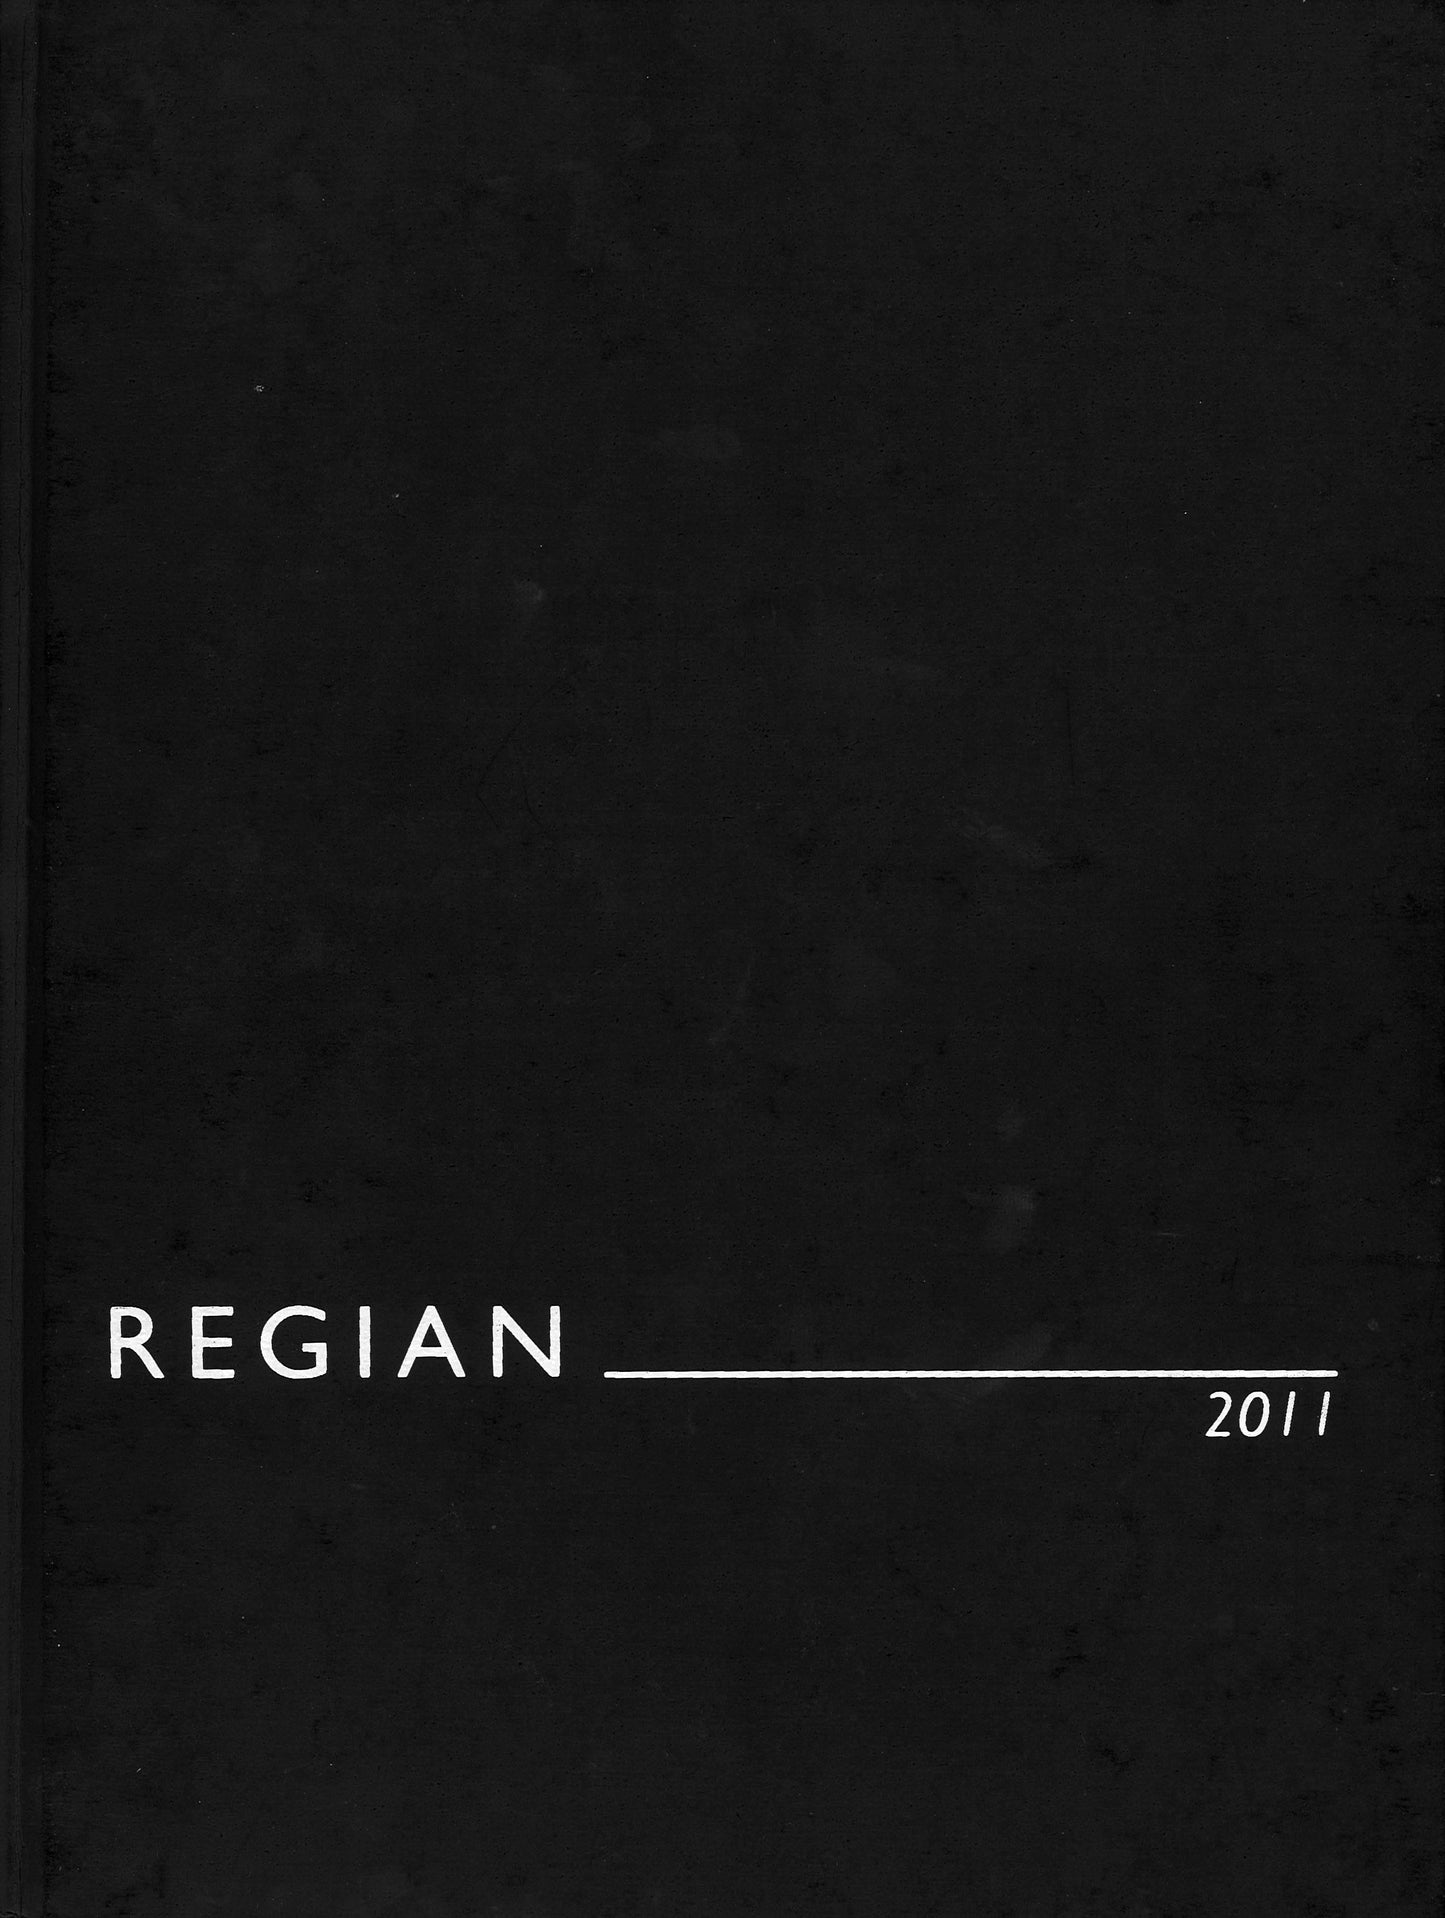 The Regian - 2011